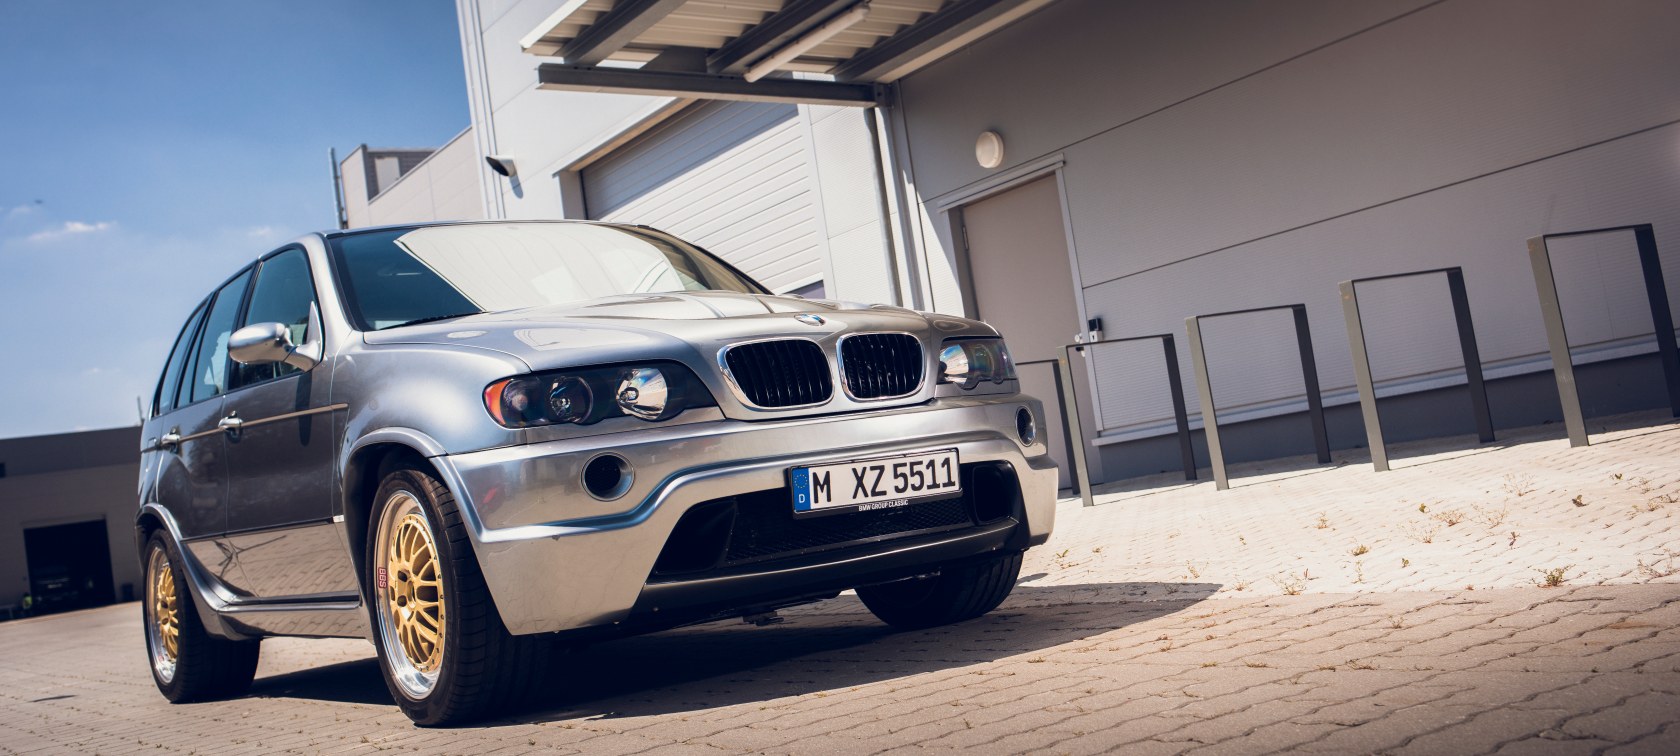 The BMW X5 Le Mans